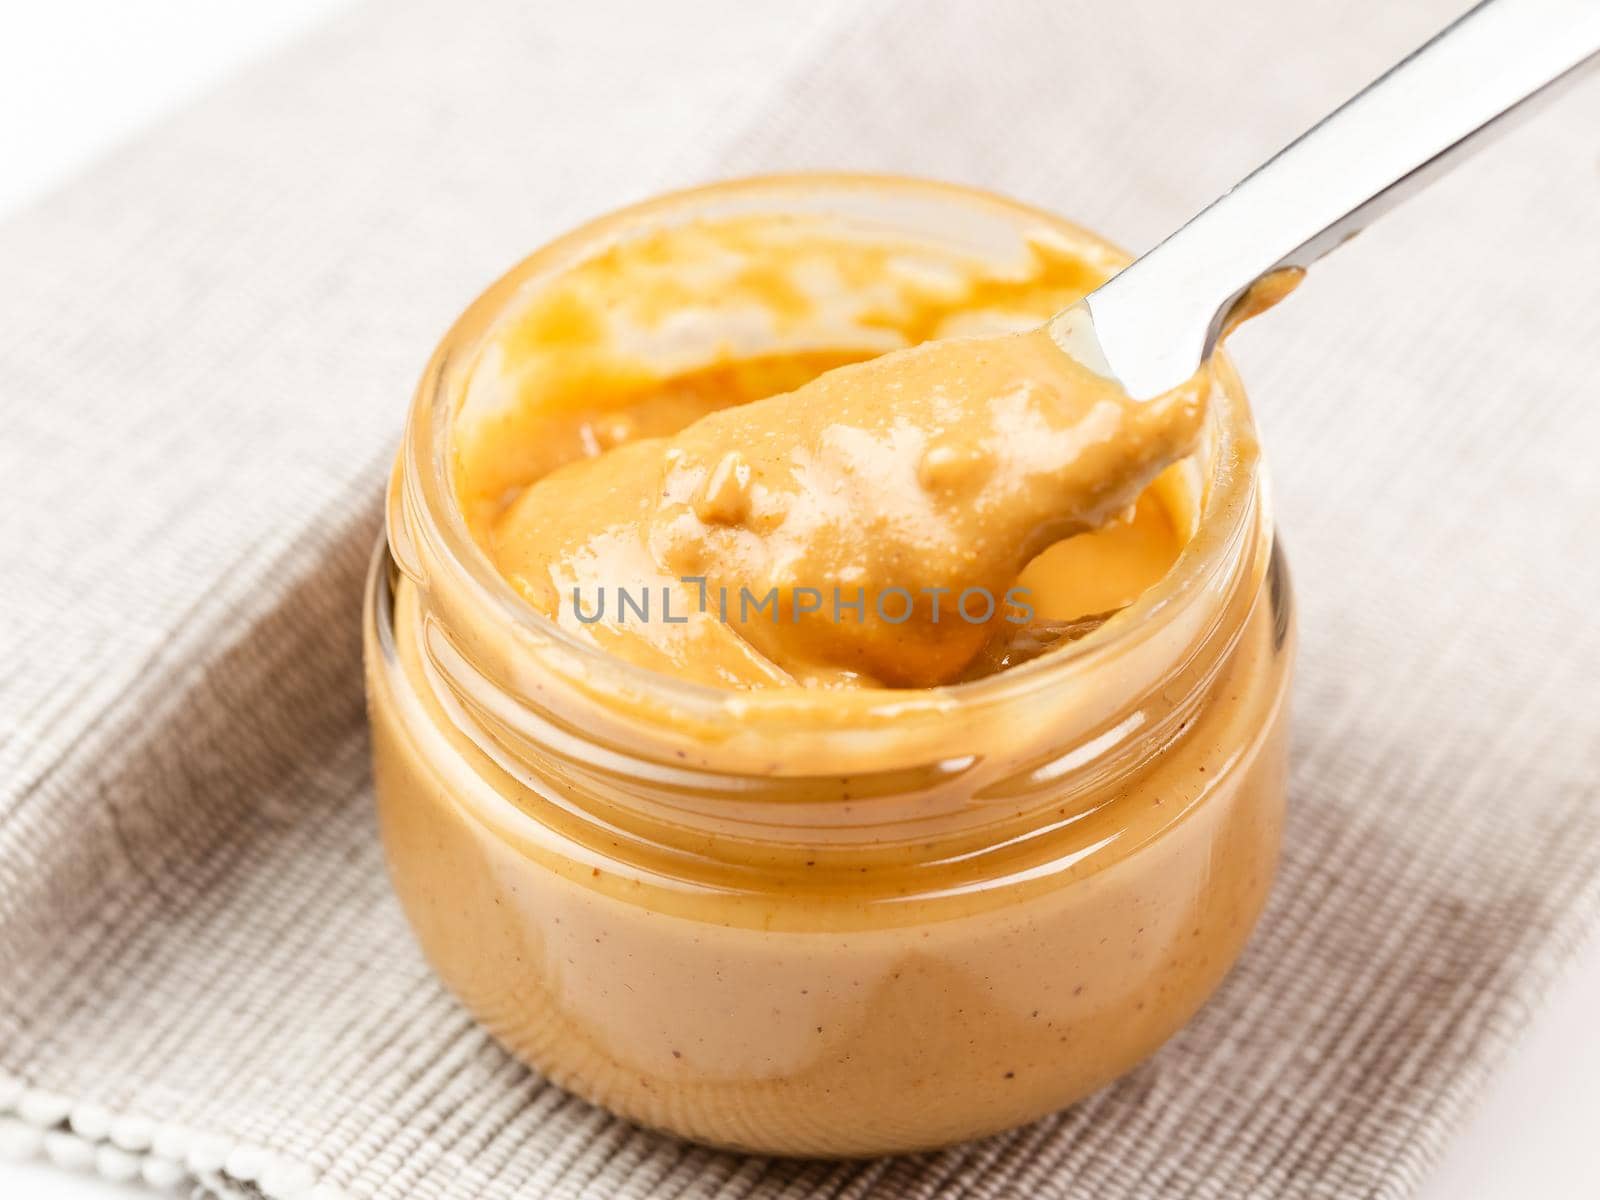 Crunchy peanut butter in a glass jar, close up